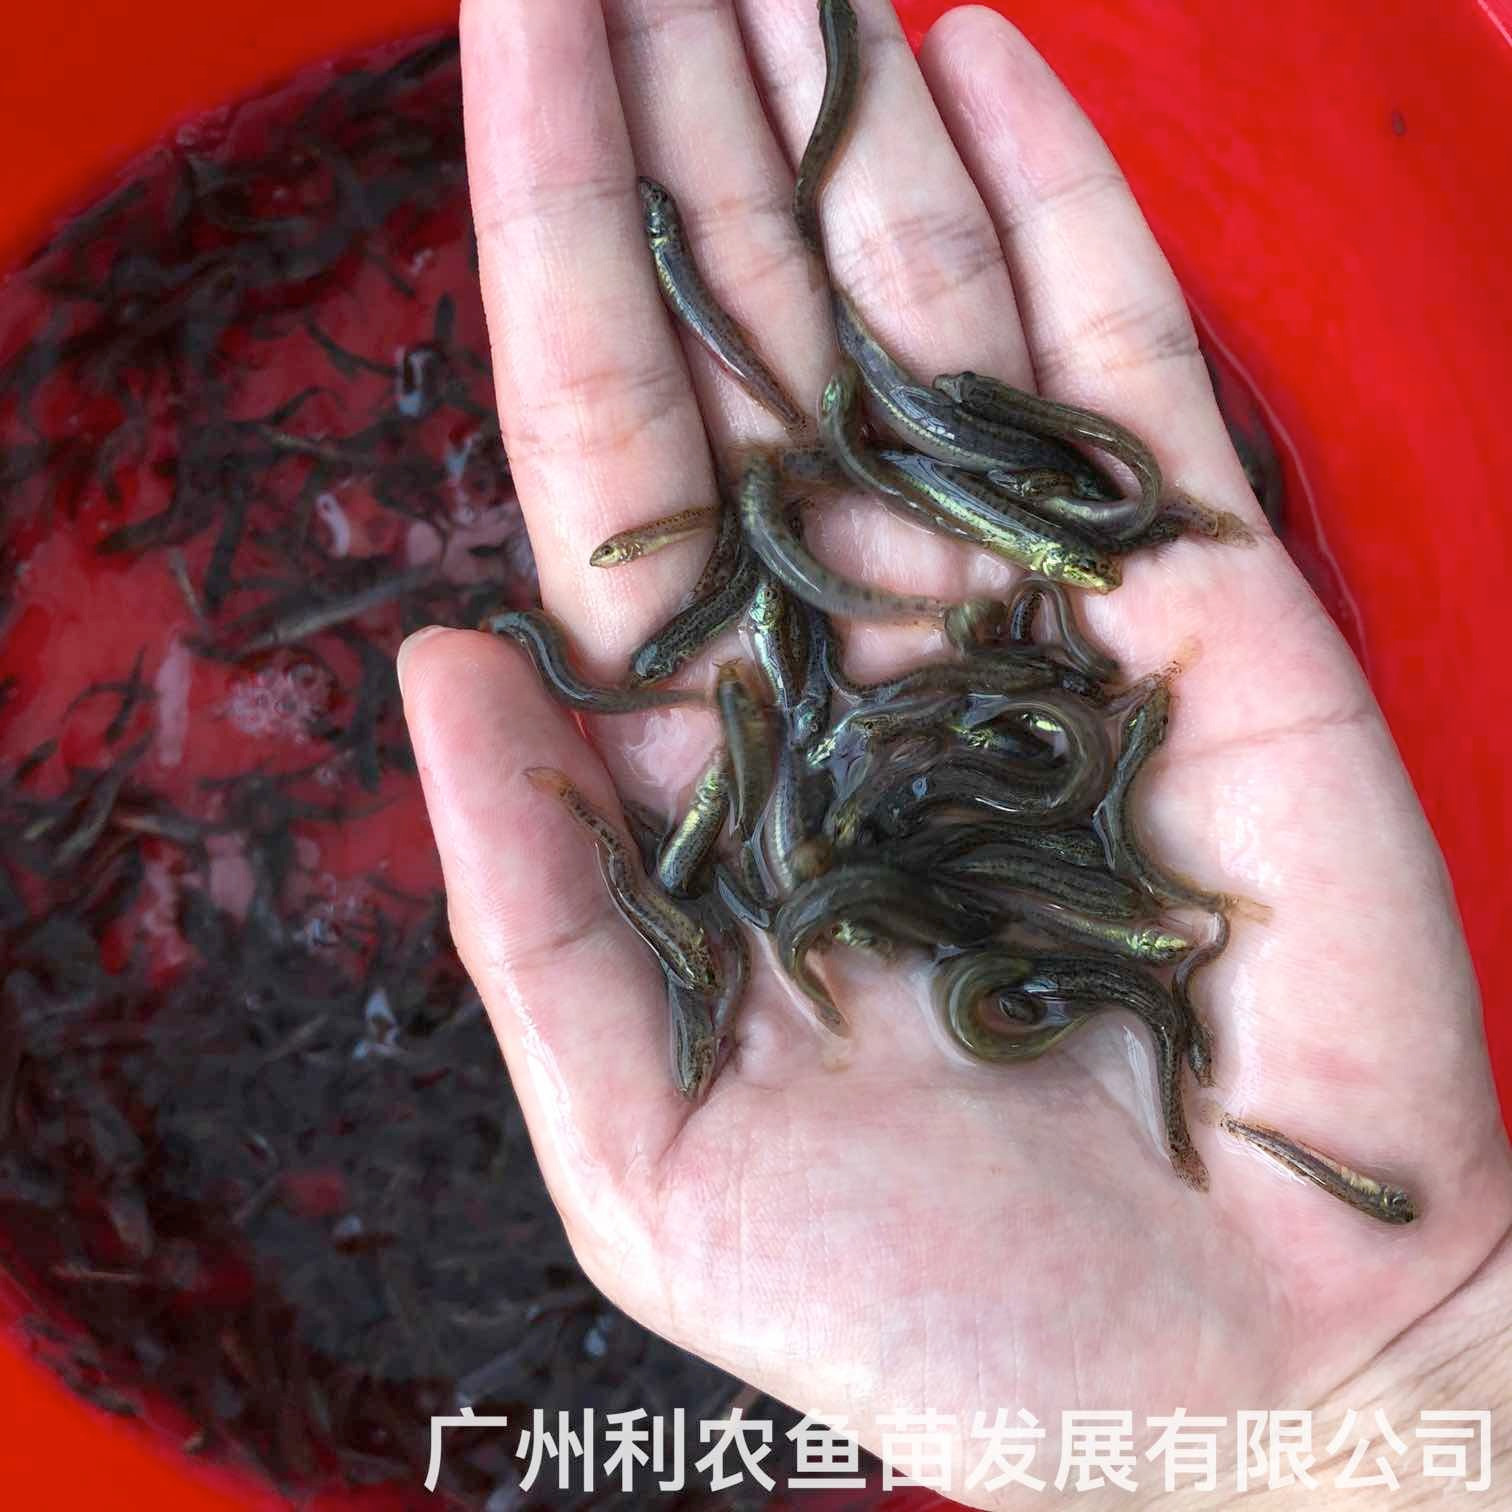 广西浦北台湾泥鳅苗出售广西苍梧泥鳅鱼苗批发